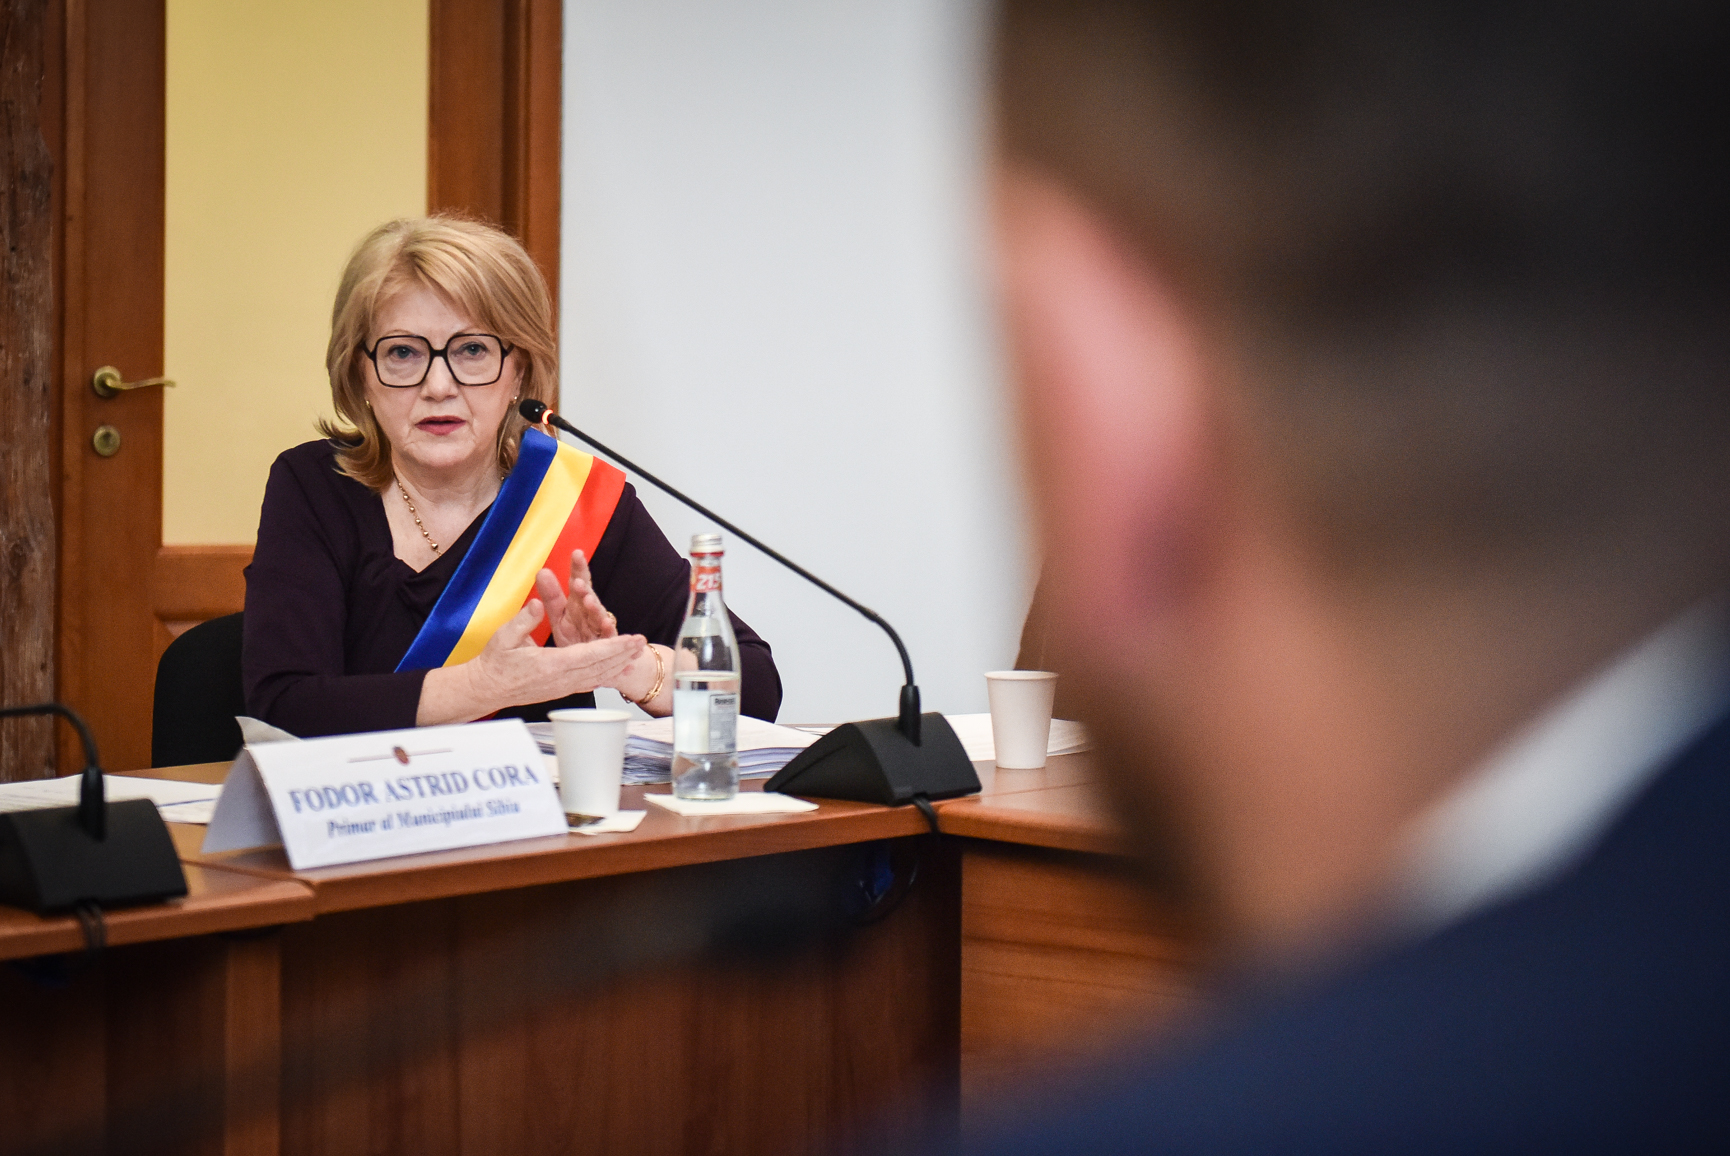 Bugetul Sibiului în 2023, mai mic decât în ultimii 2 ani. Astrid Fodor: „Este generos”. Principalele investiții așteptate